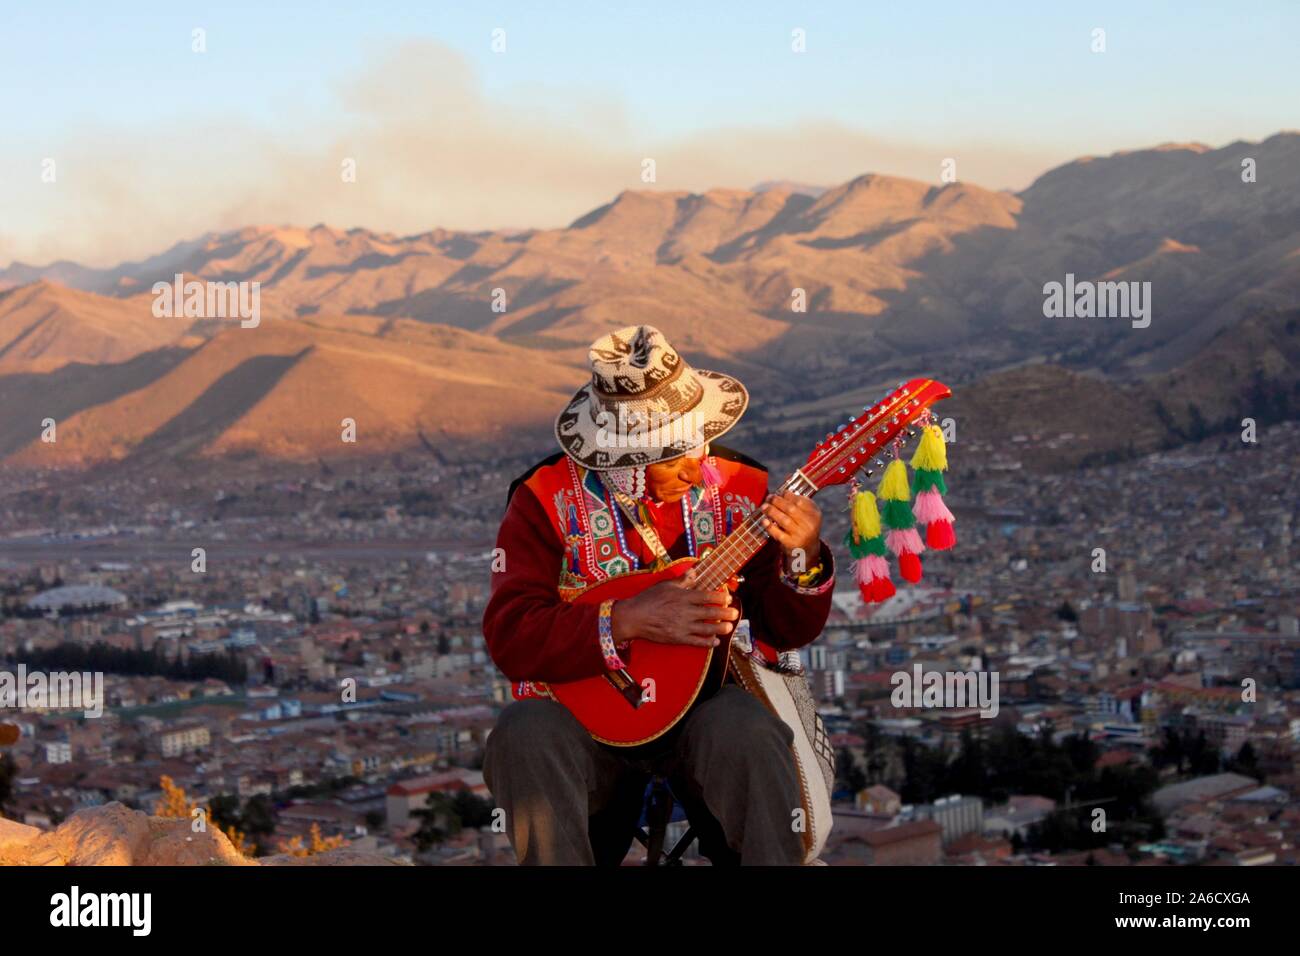 La guitarra peruana, con el telón de fondo de los Andes Fotografía de stock  - Alamy